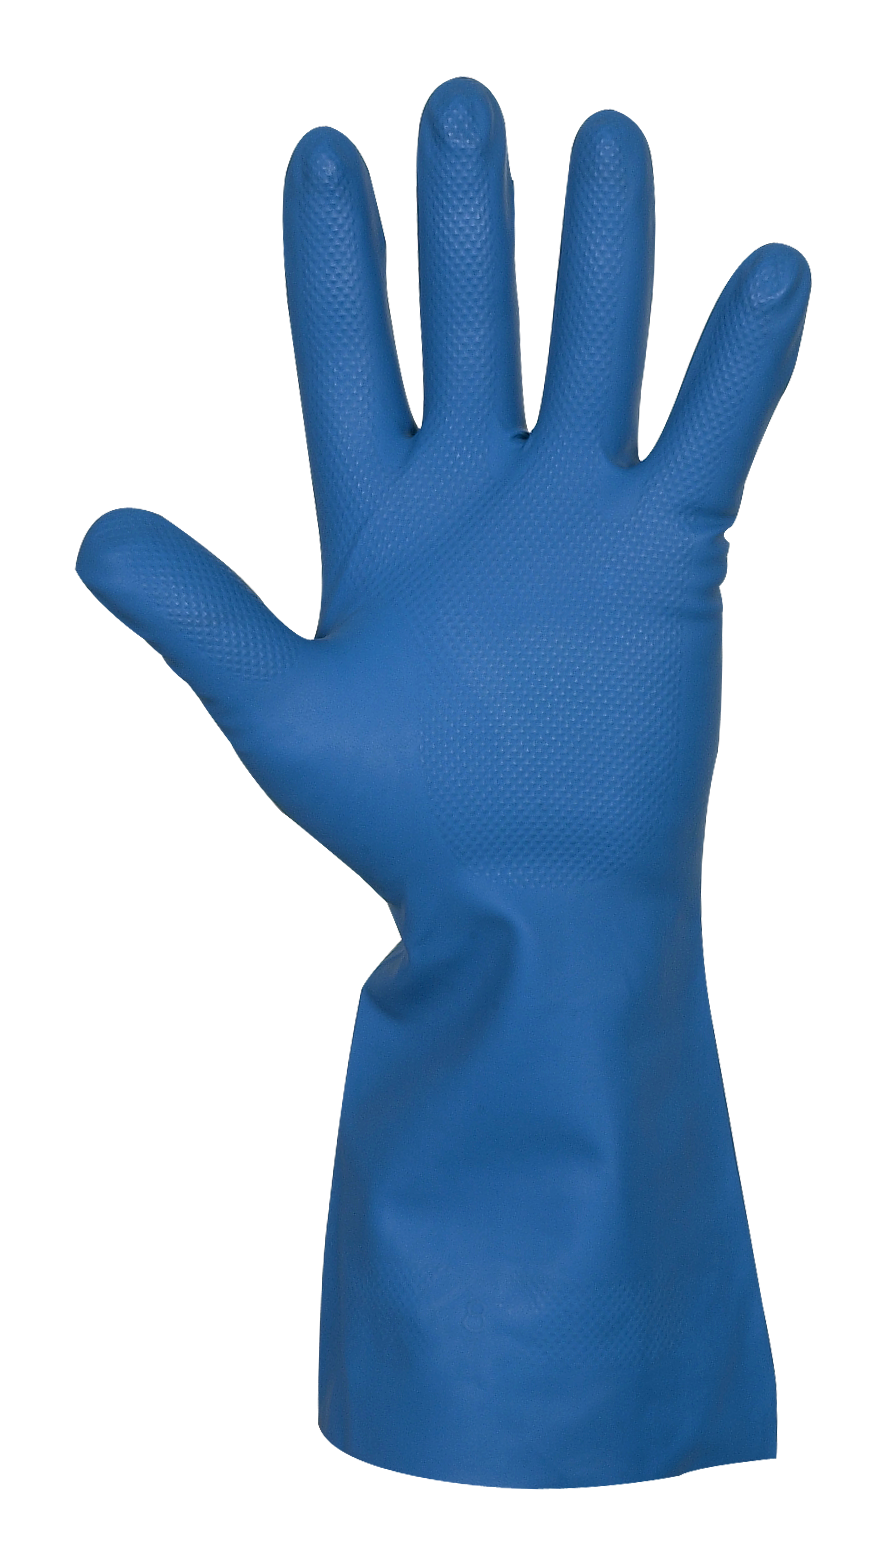 Reinigungs- und Schutzhandschuh Nitril Gr. XL, innen Samt, blau, x-large